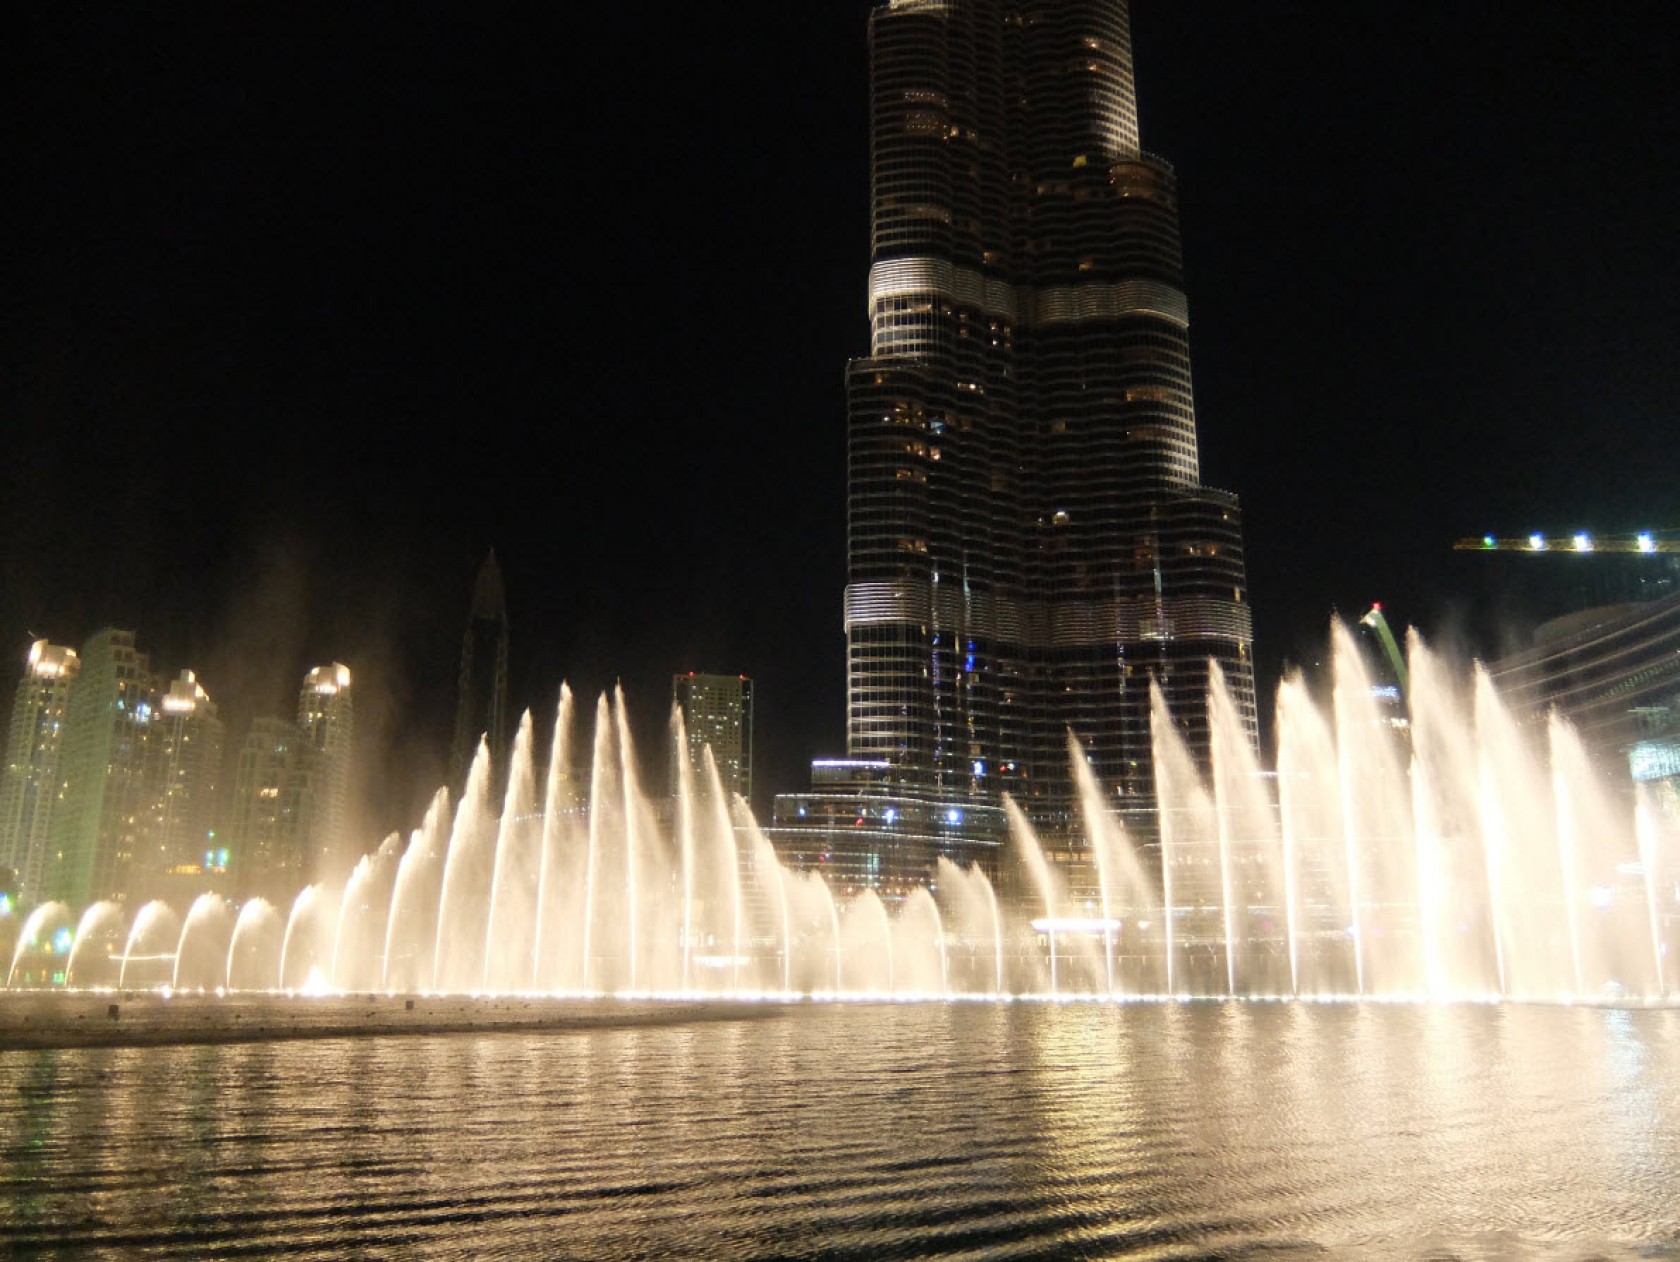 La Fontaine de Dubai